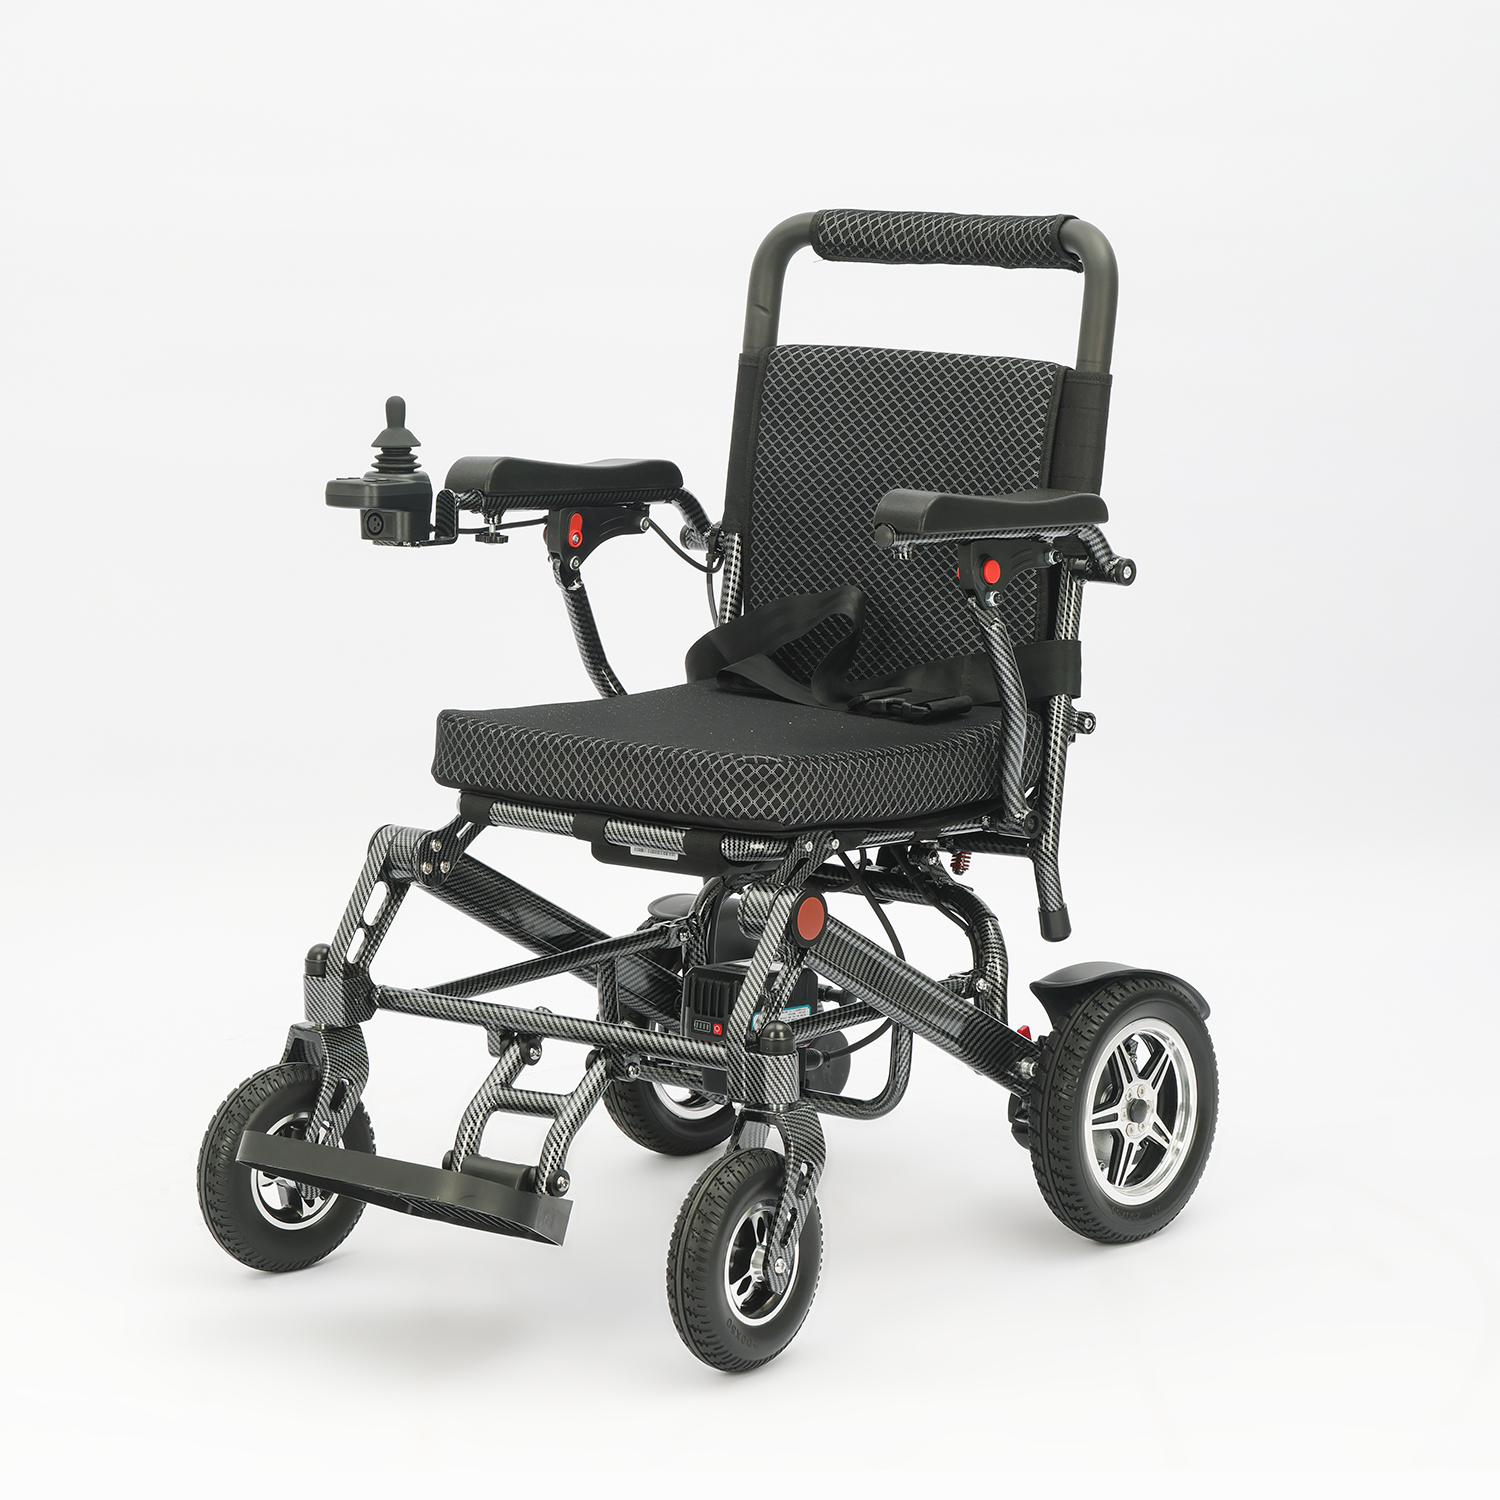 Ultralichte elektrische rolstoel van slechts 18,5 kg draagbare gemotoriseerde rolstoel van aluminiumlegering